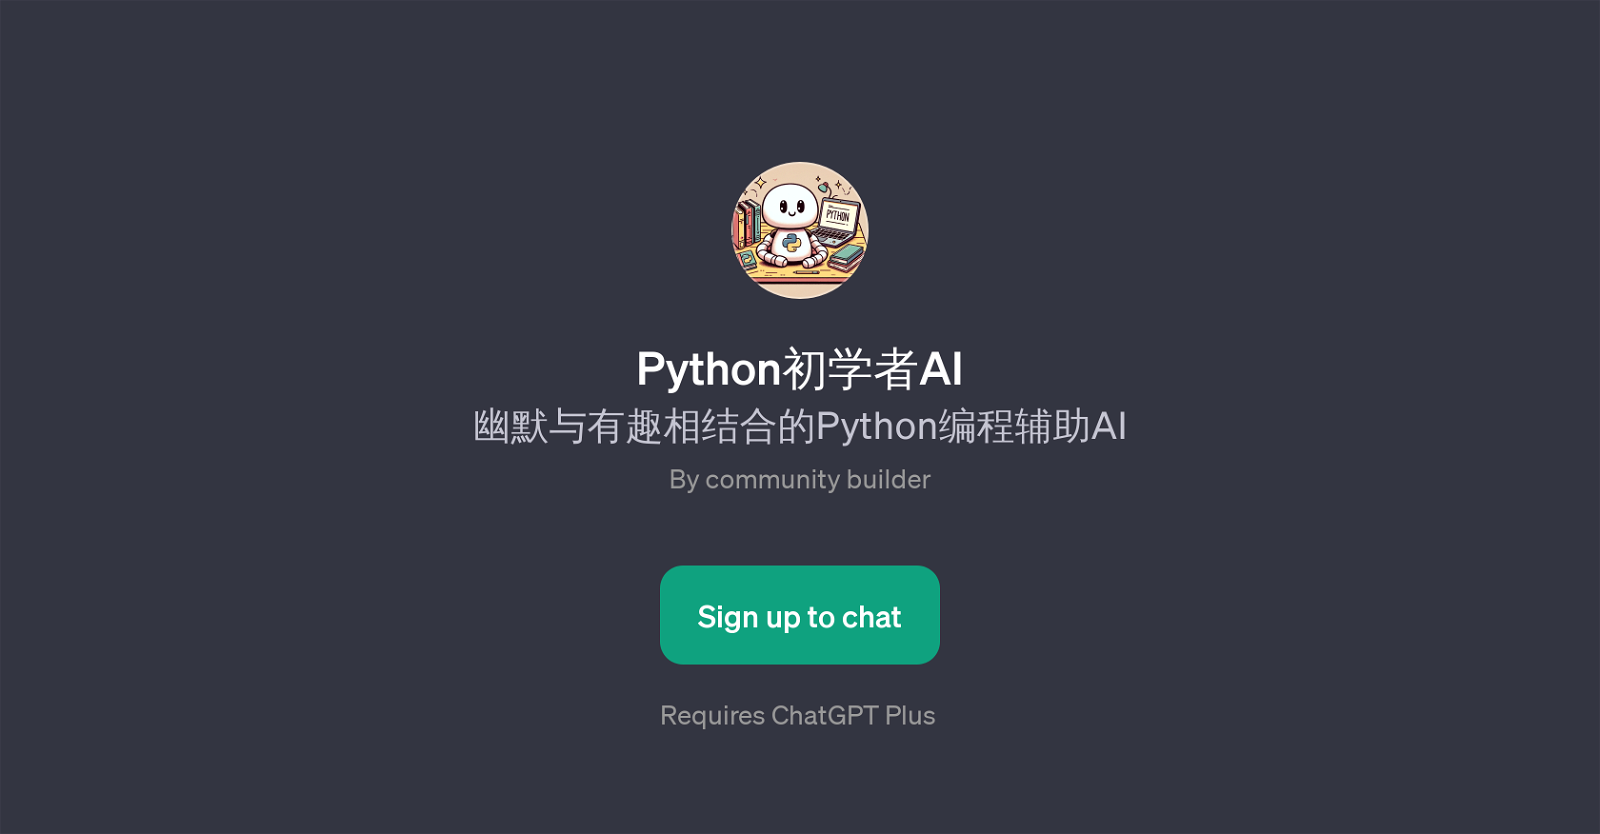 PythonAI website